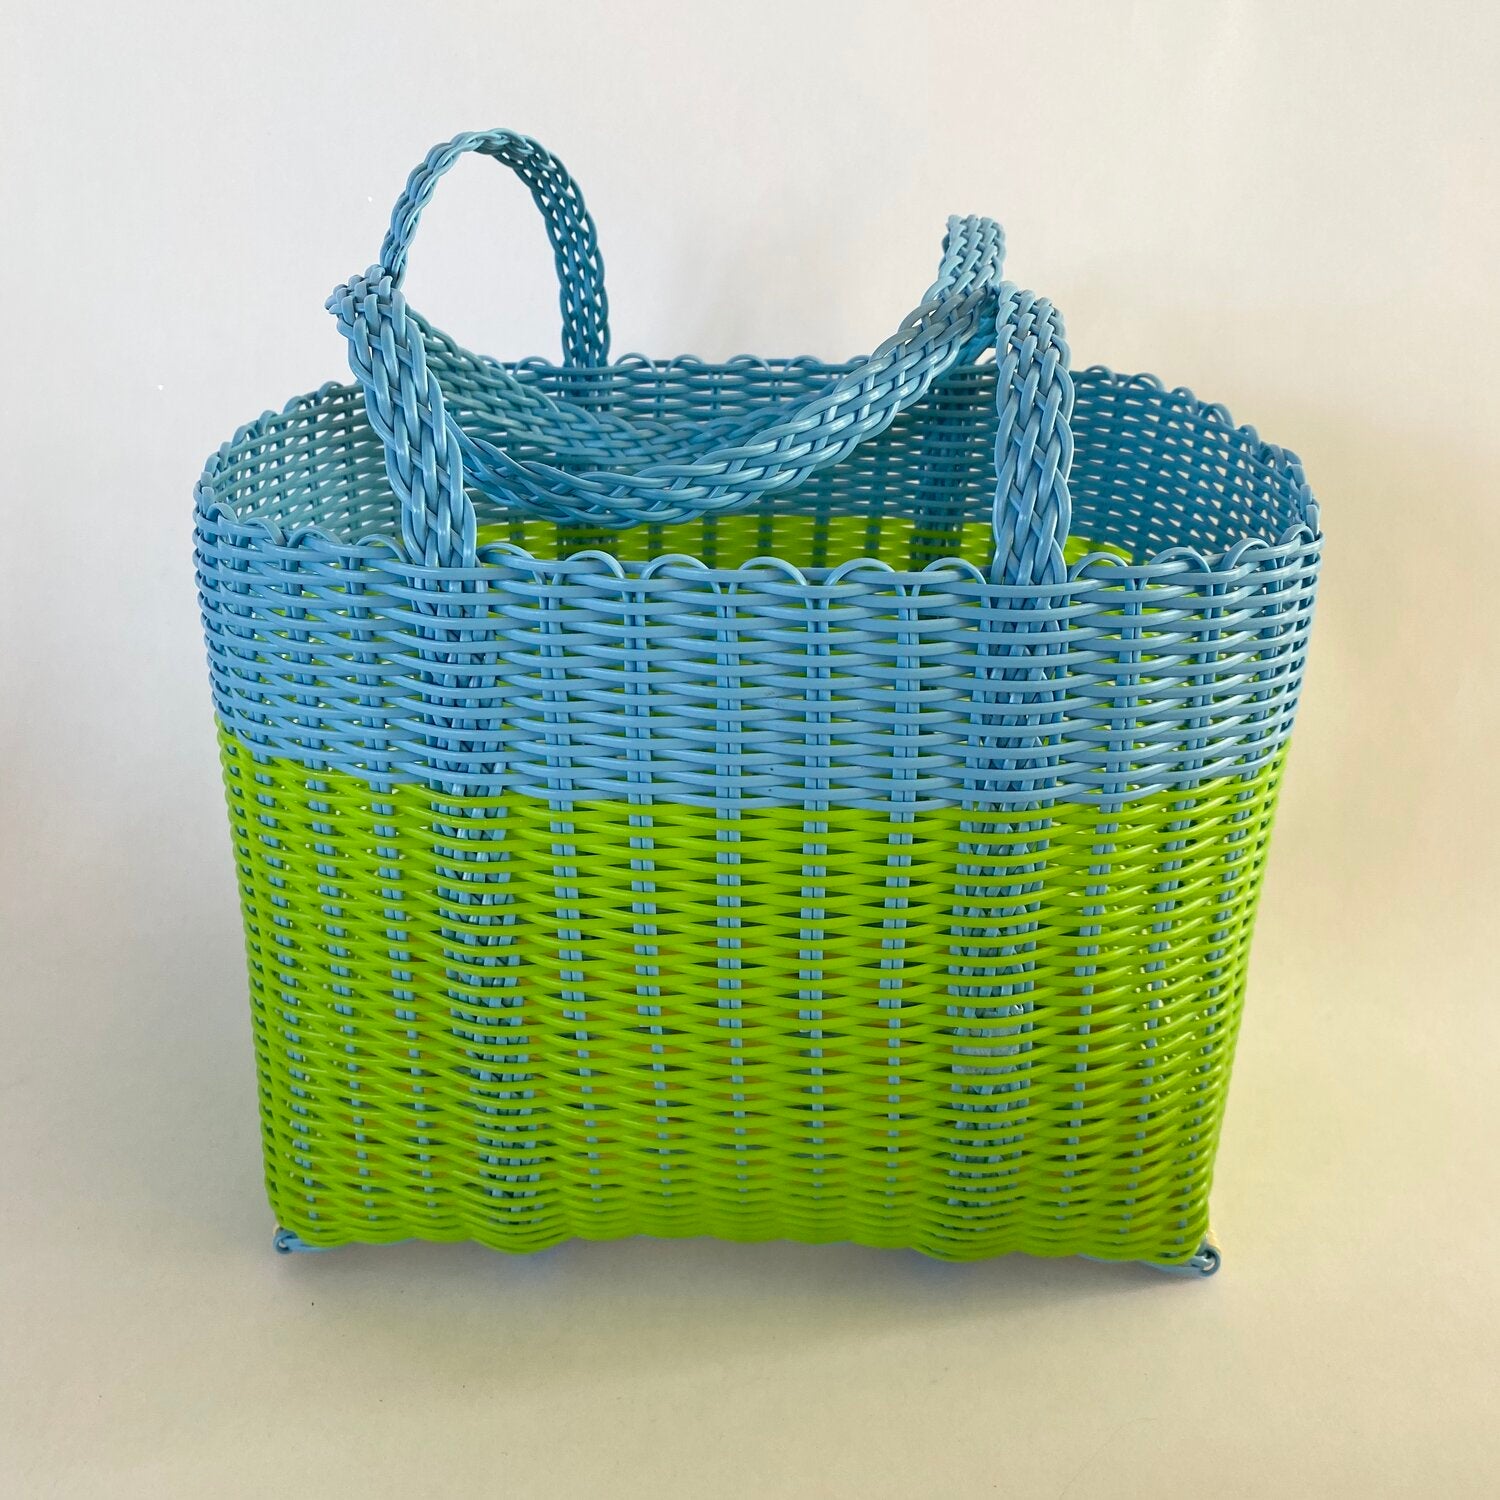 blue & green handbag